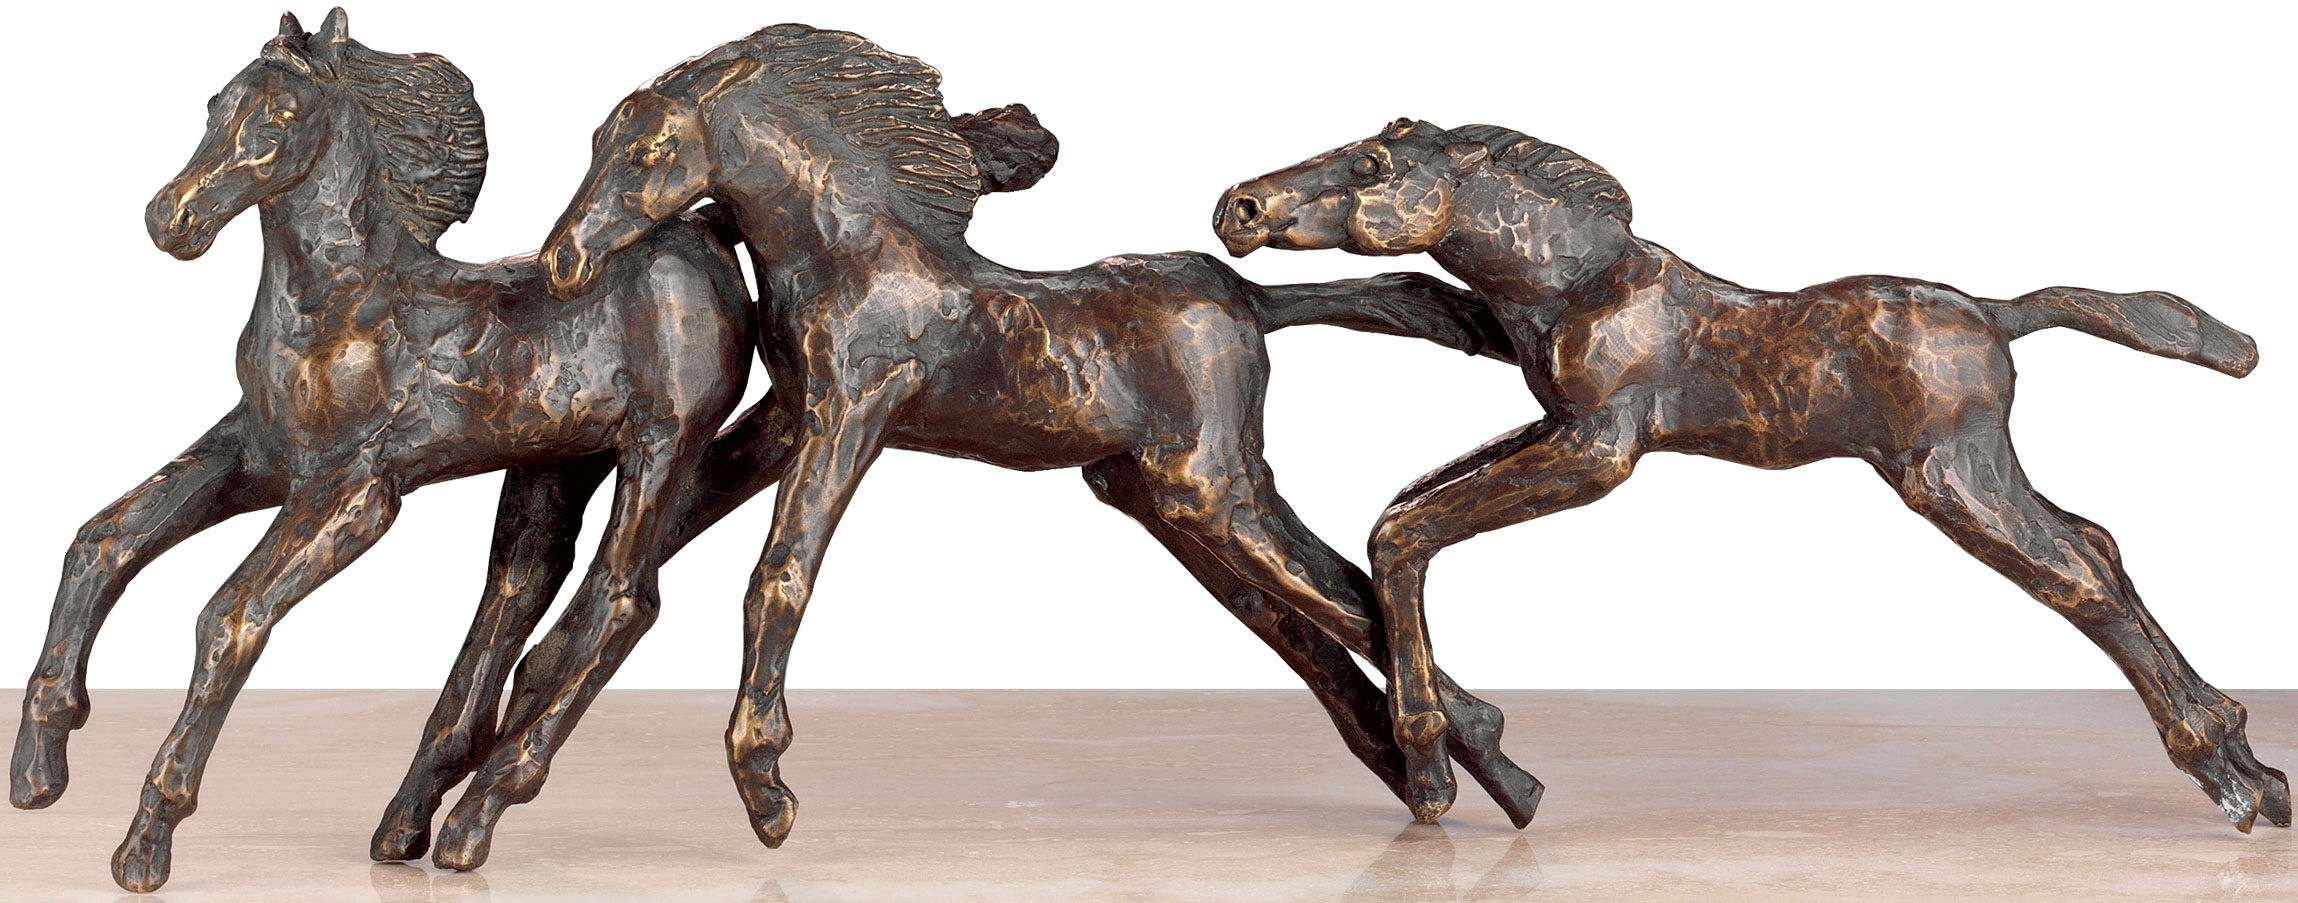 Skulpturgruppe "Three Foals in Spring", bronze von Kurt Arentz